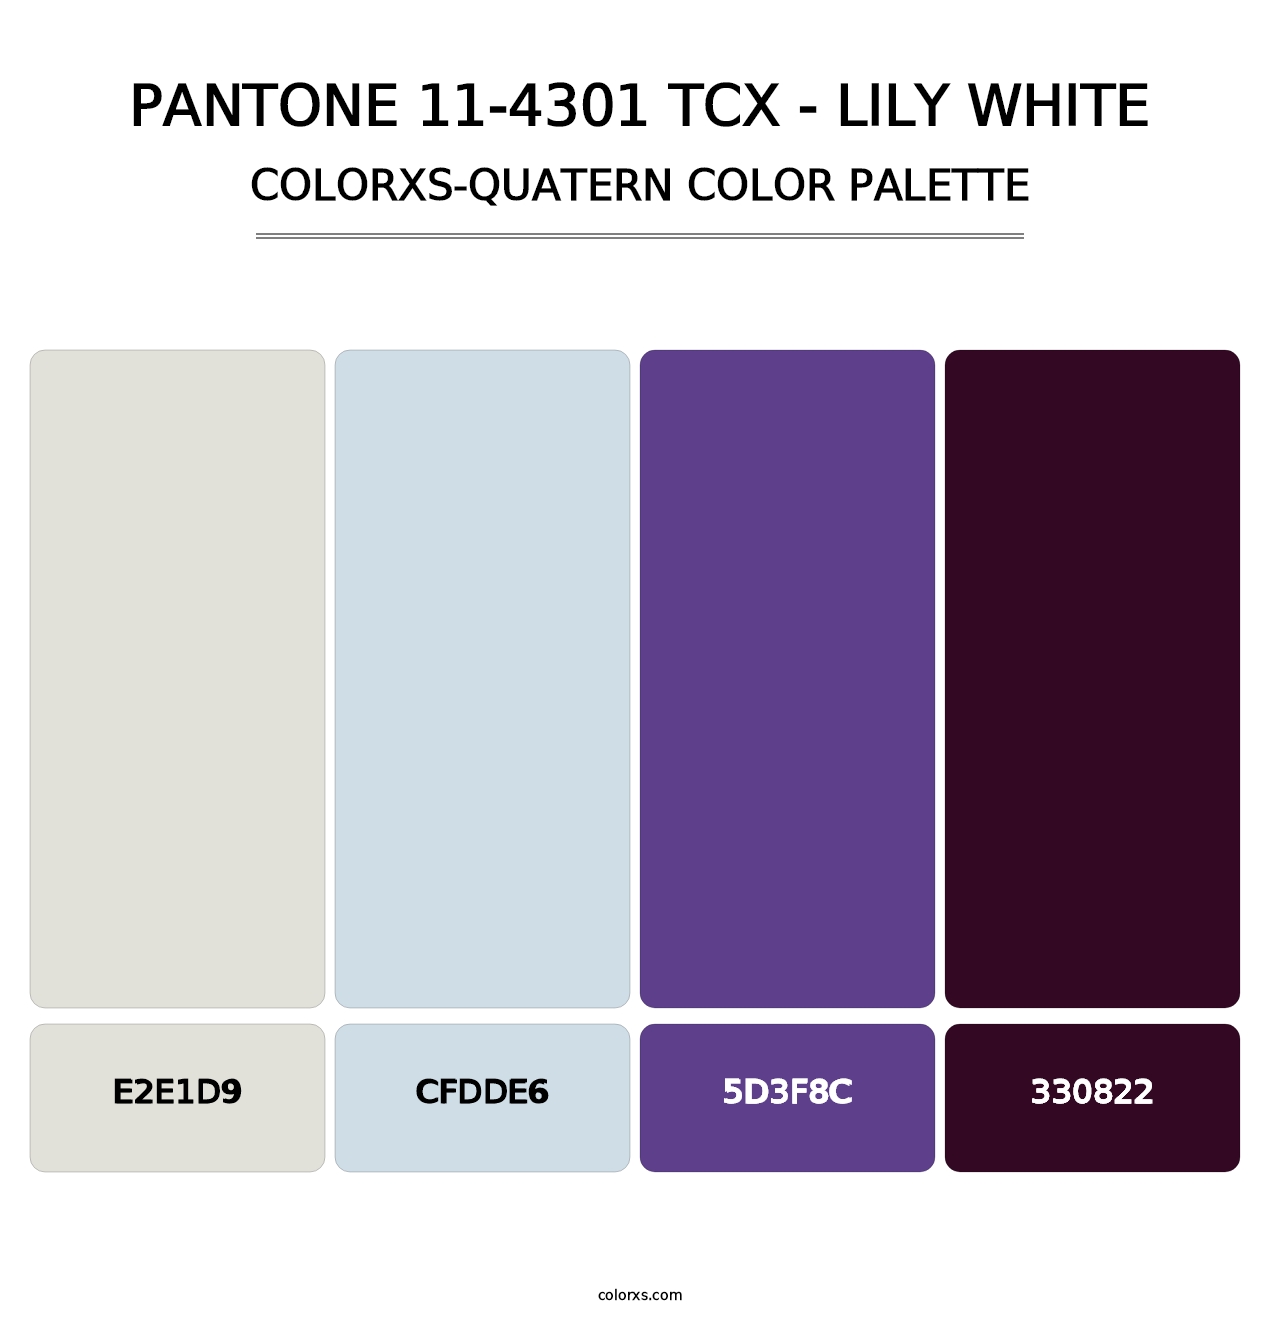 PANTONE 11-4301 TCX - Lily White - Colorxs Quatern Palette